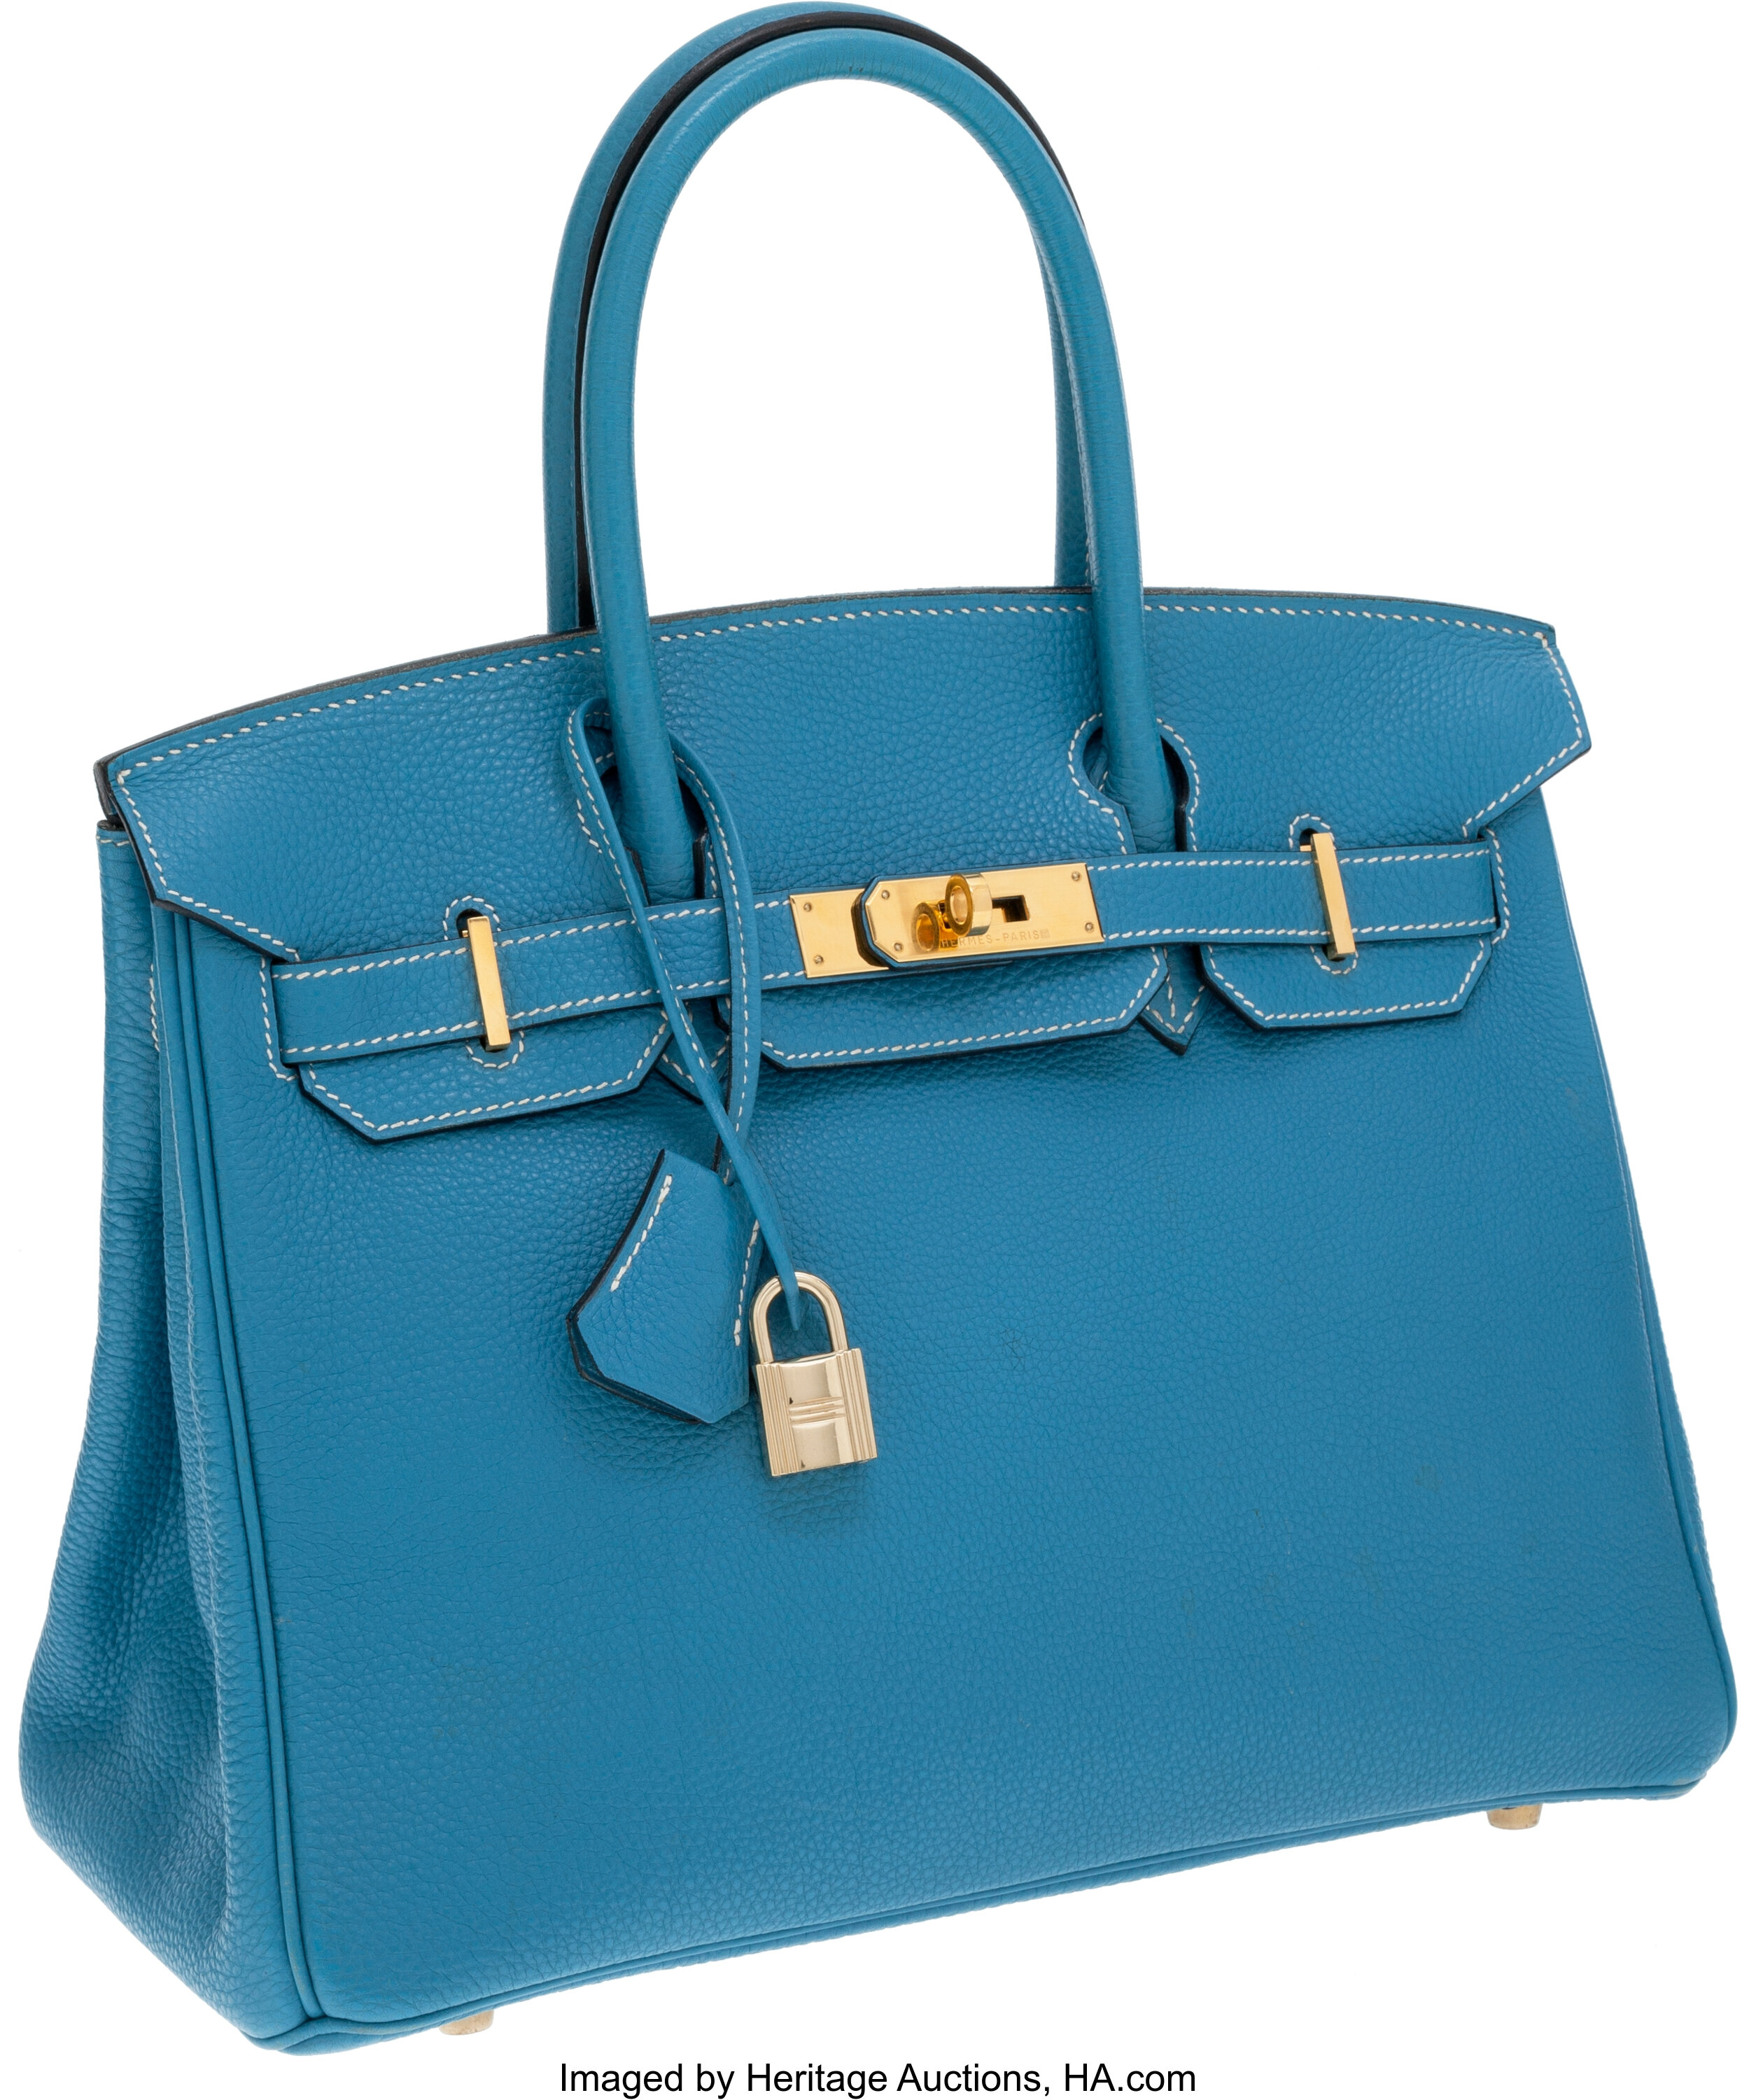 Hermes 30cm Blue Jean Togo Leather Birkin Bag with Gold Hardware. | Lot ...